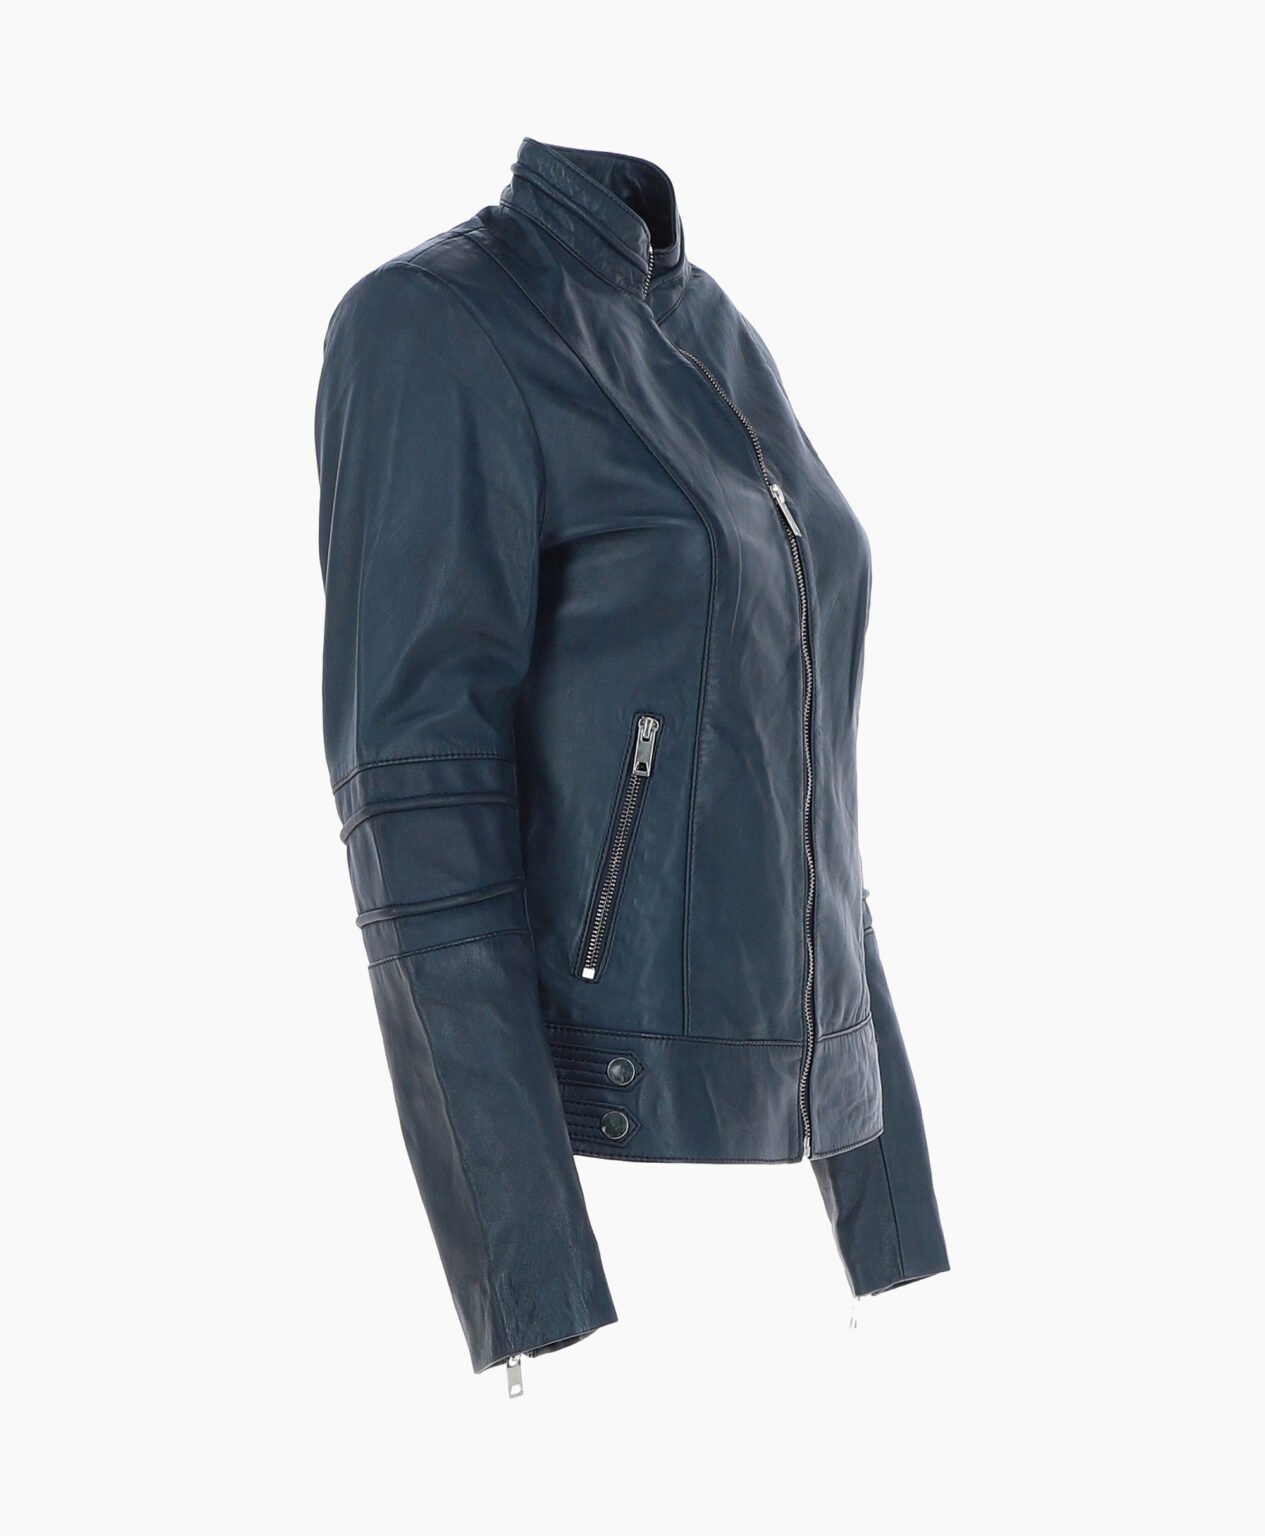 vogue-jacket-leather-biker-jacket-navy-lahaina-image203